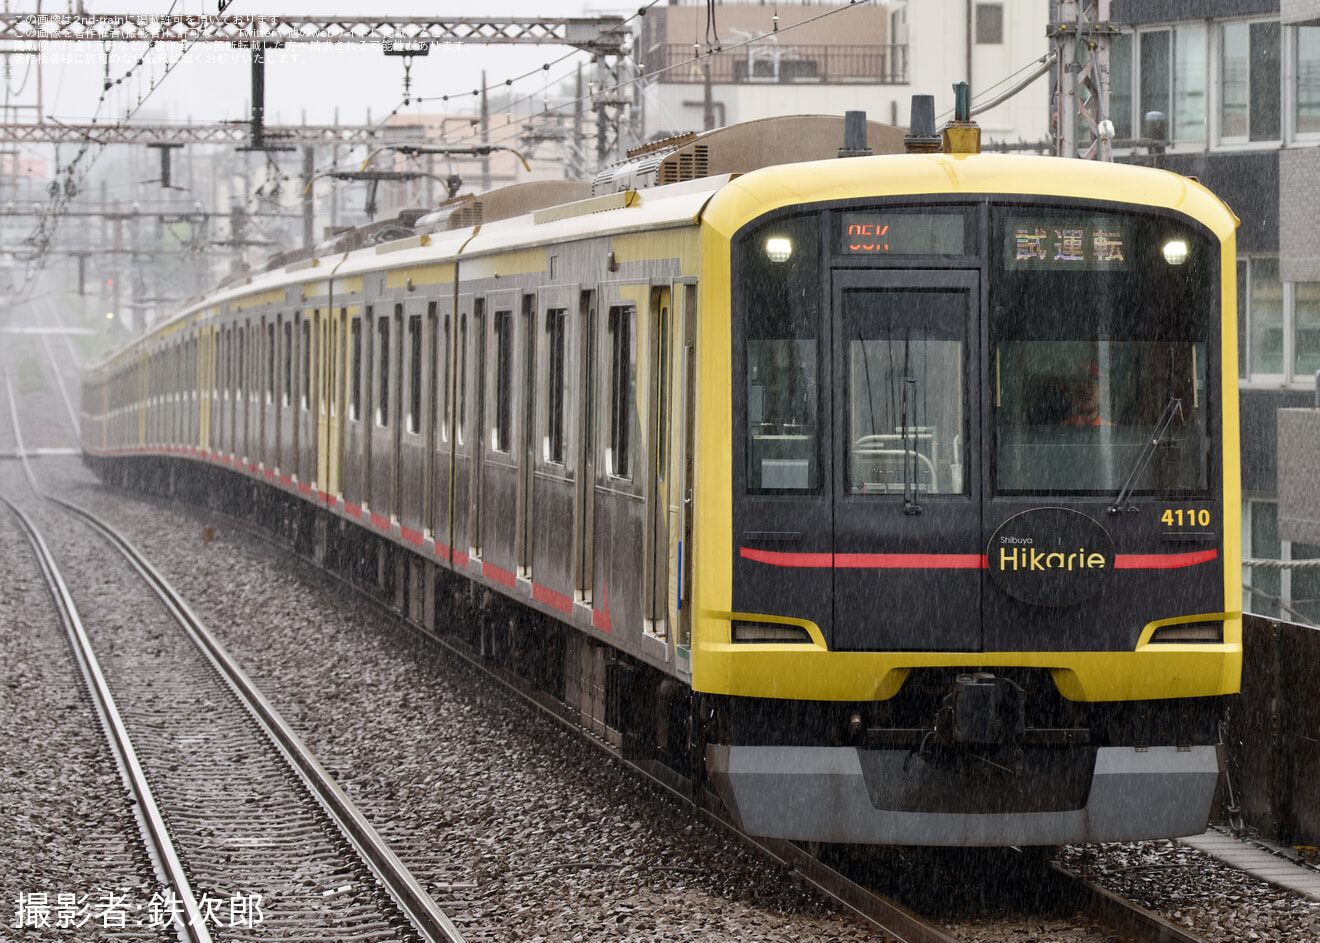 【東急】5050系4110F 「Shibuya Hikarie号」ATO調整試運転の拡大写真